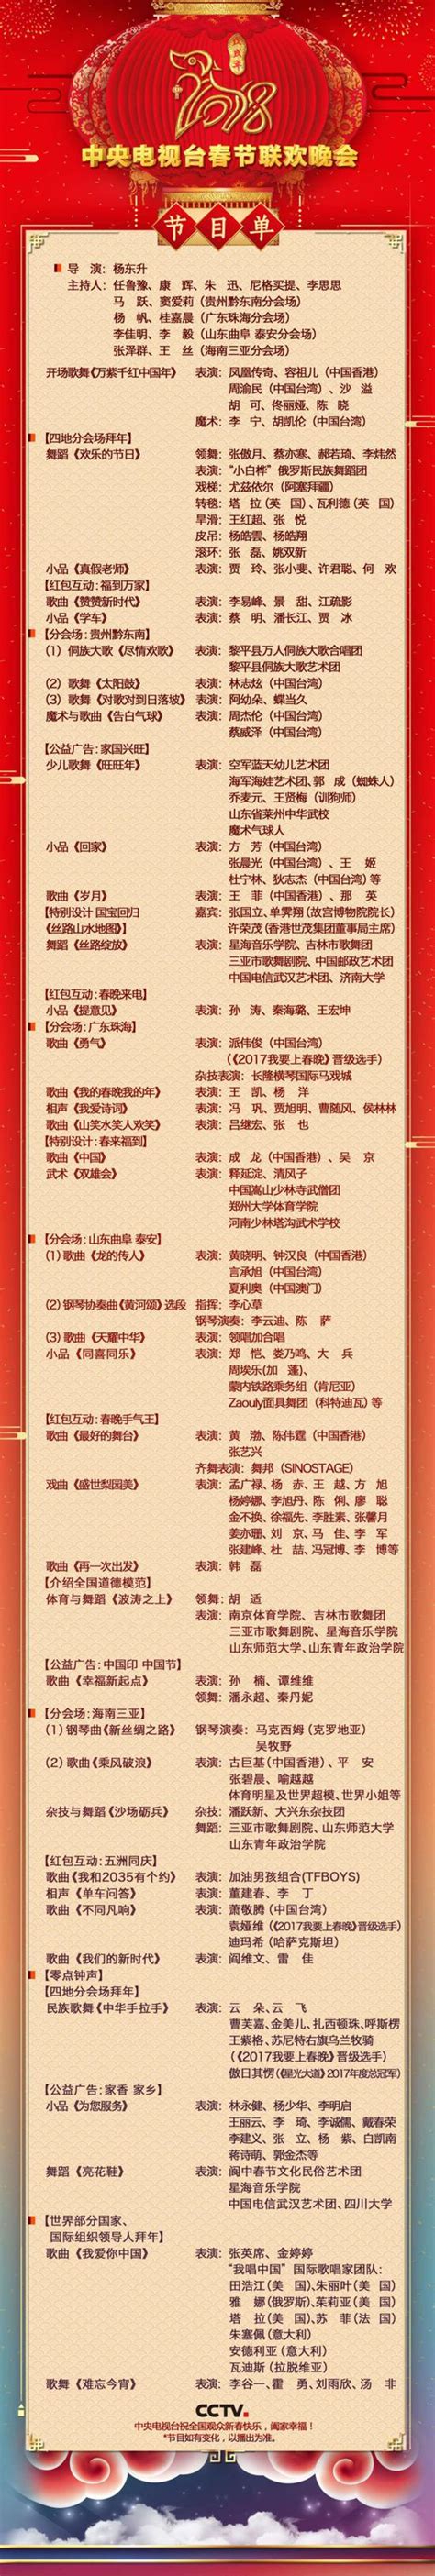 央视春晚节目单公布:河南人出演的四个节目全部在列_新浪河南_新浪网